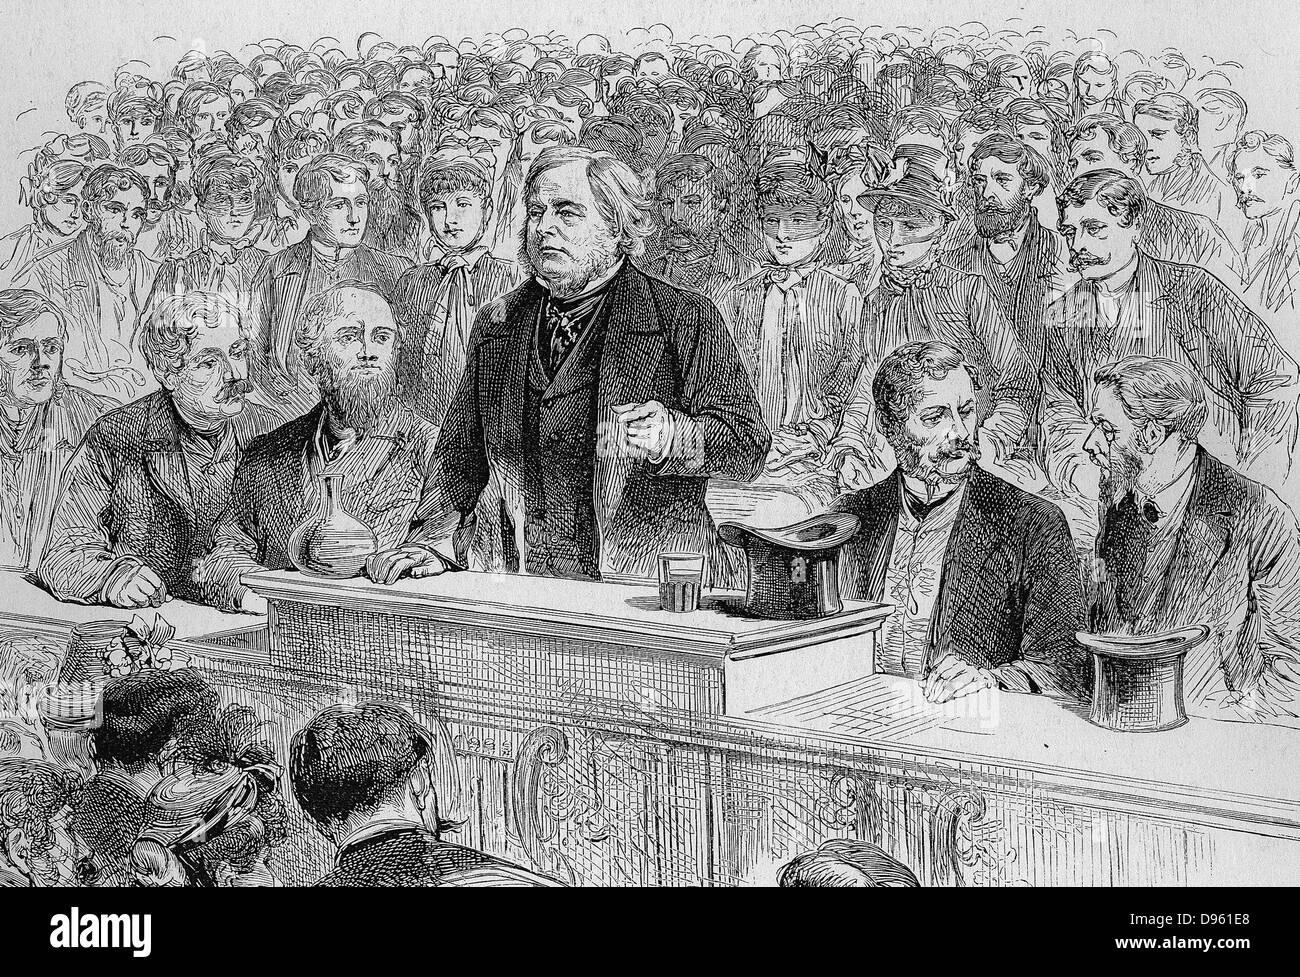 John Bright (1811-1889) englischer Quaker radikale Staatsmann. Verfechter der Anti-Corn Law League und des freien Handels. Hell spricht bei einer Wahlkampfveranstaltung in Birmingham, November 1885. Gravur. Stockfoto